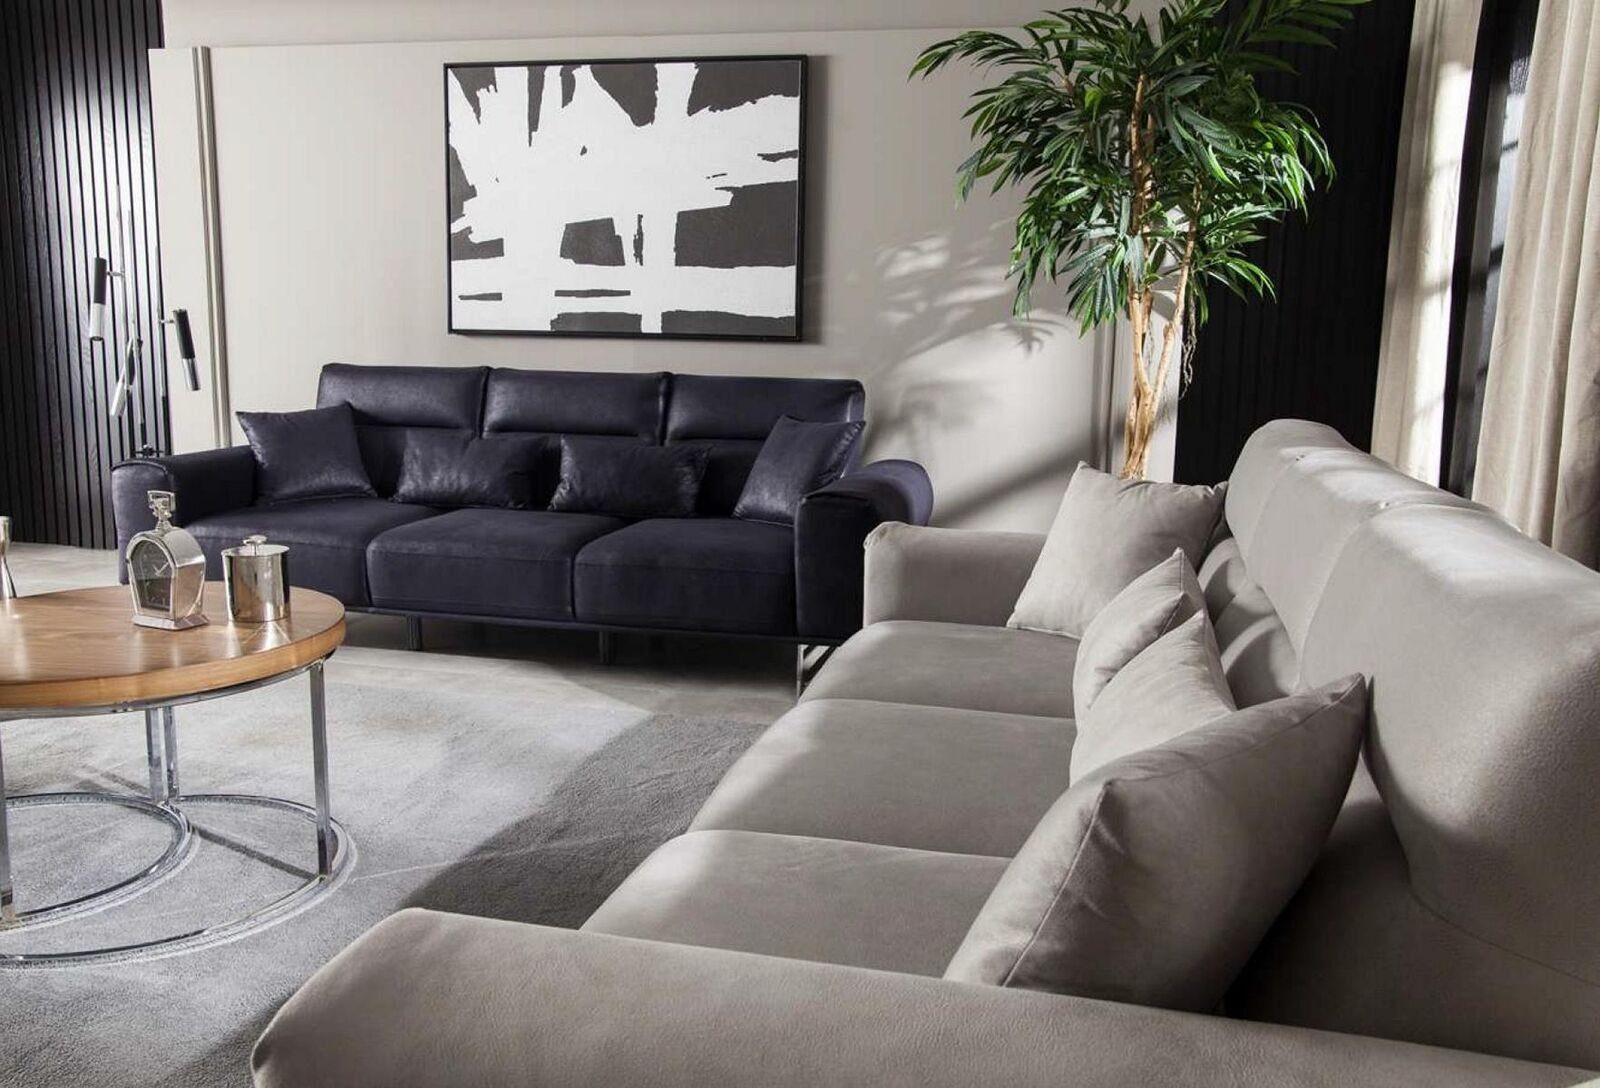 JVmoebel 3-Sitzer Weiche Design Couch Couchen in 1 Dreisitzer Teile, Möbel Made Europa Polster Schwarz